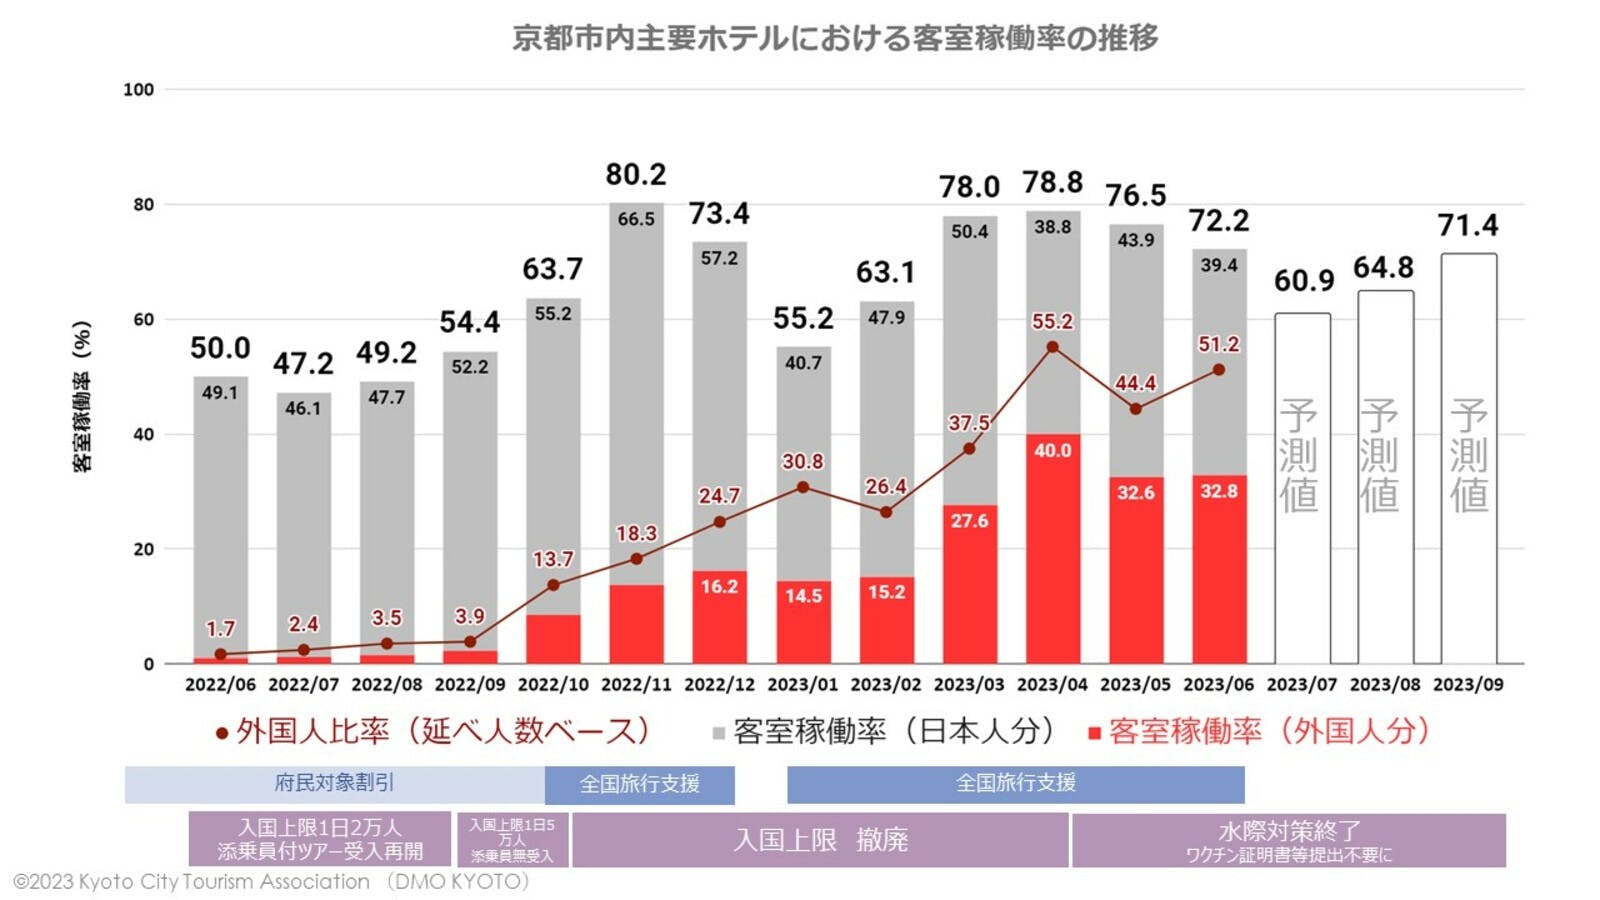 京都市内主要ホテルにおける客室稼働率の推移のグラフ